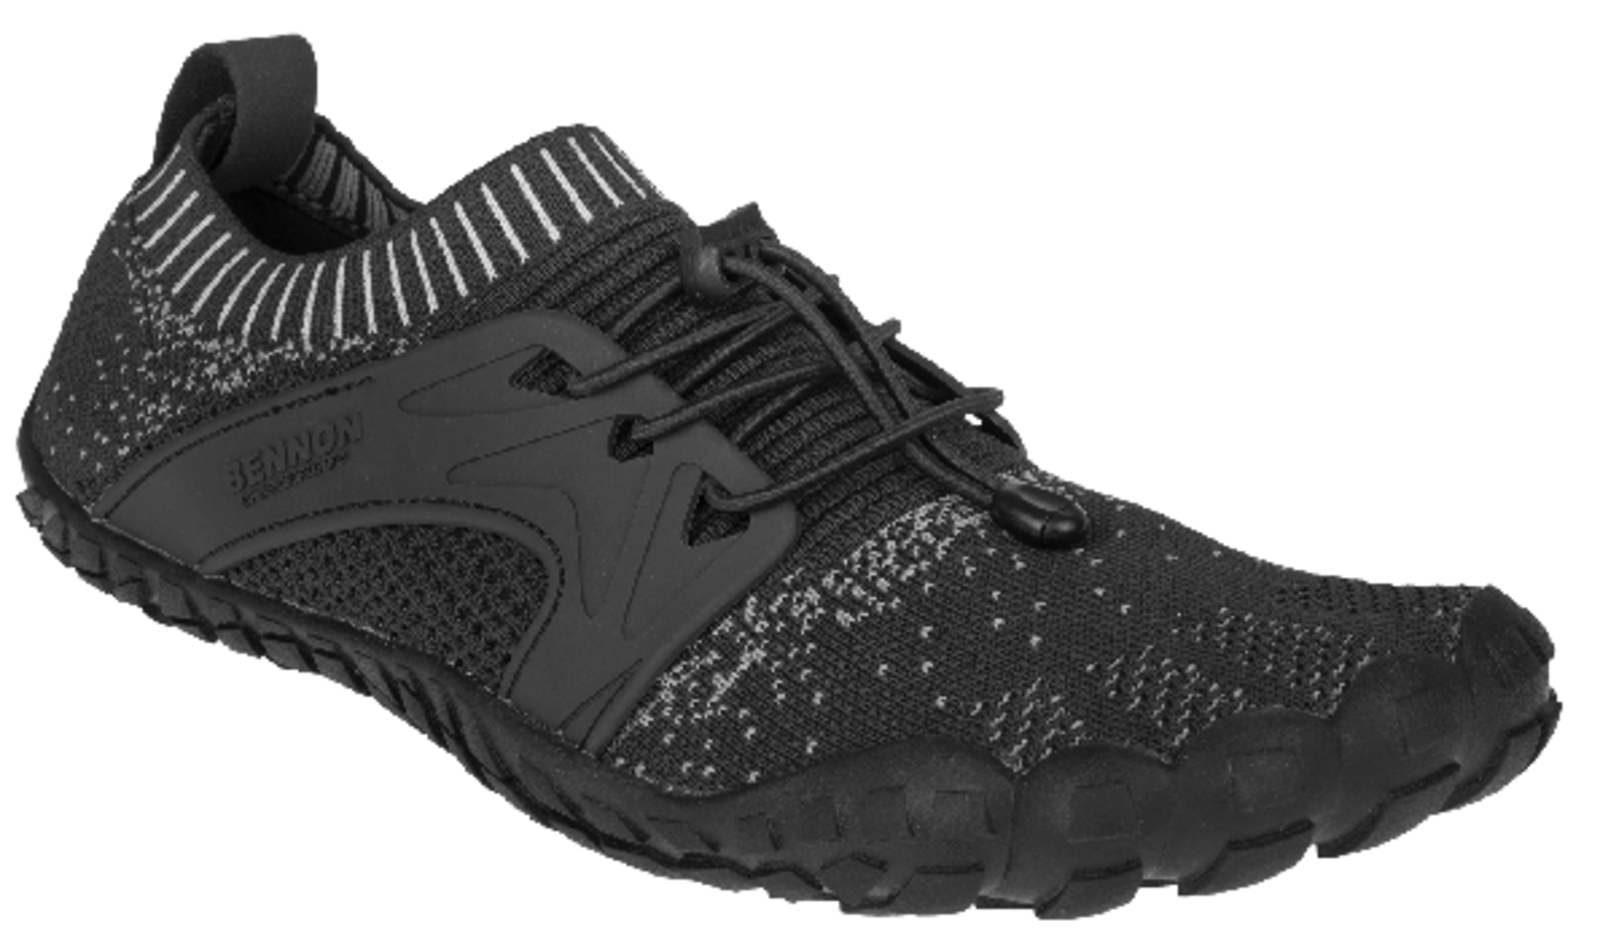 Voľnočasová barefoot obuv Bennon Bosky - veľkosť: 39, farba: čierna/biela